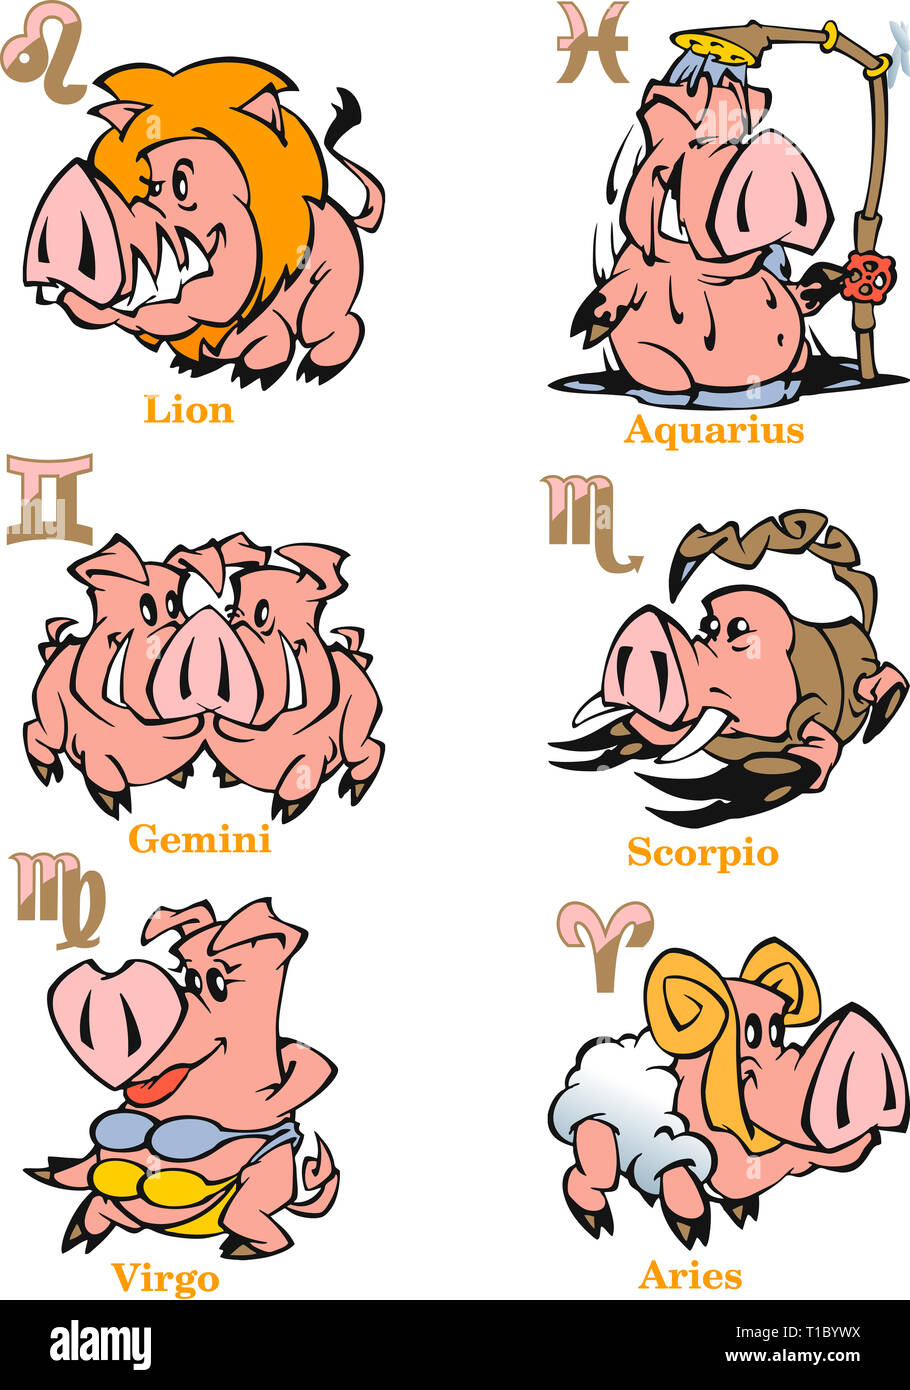 L'illustration montre un ensemble de signes du zodiaque Lion, Gémeaux, Scorpion, Vierge, Sagittaire, Verseau pour le signe astrologique horoscope dans la nouvelle année chinoise Banque D'Images